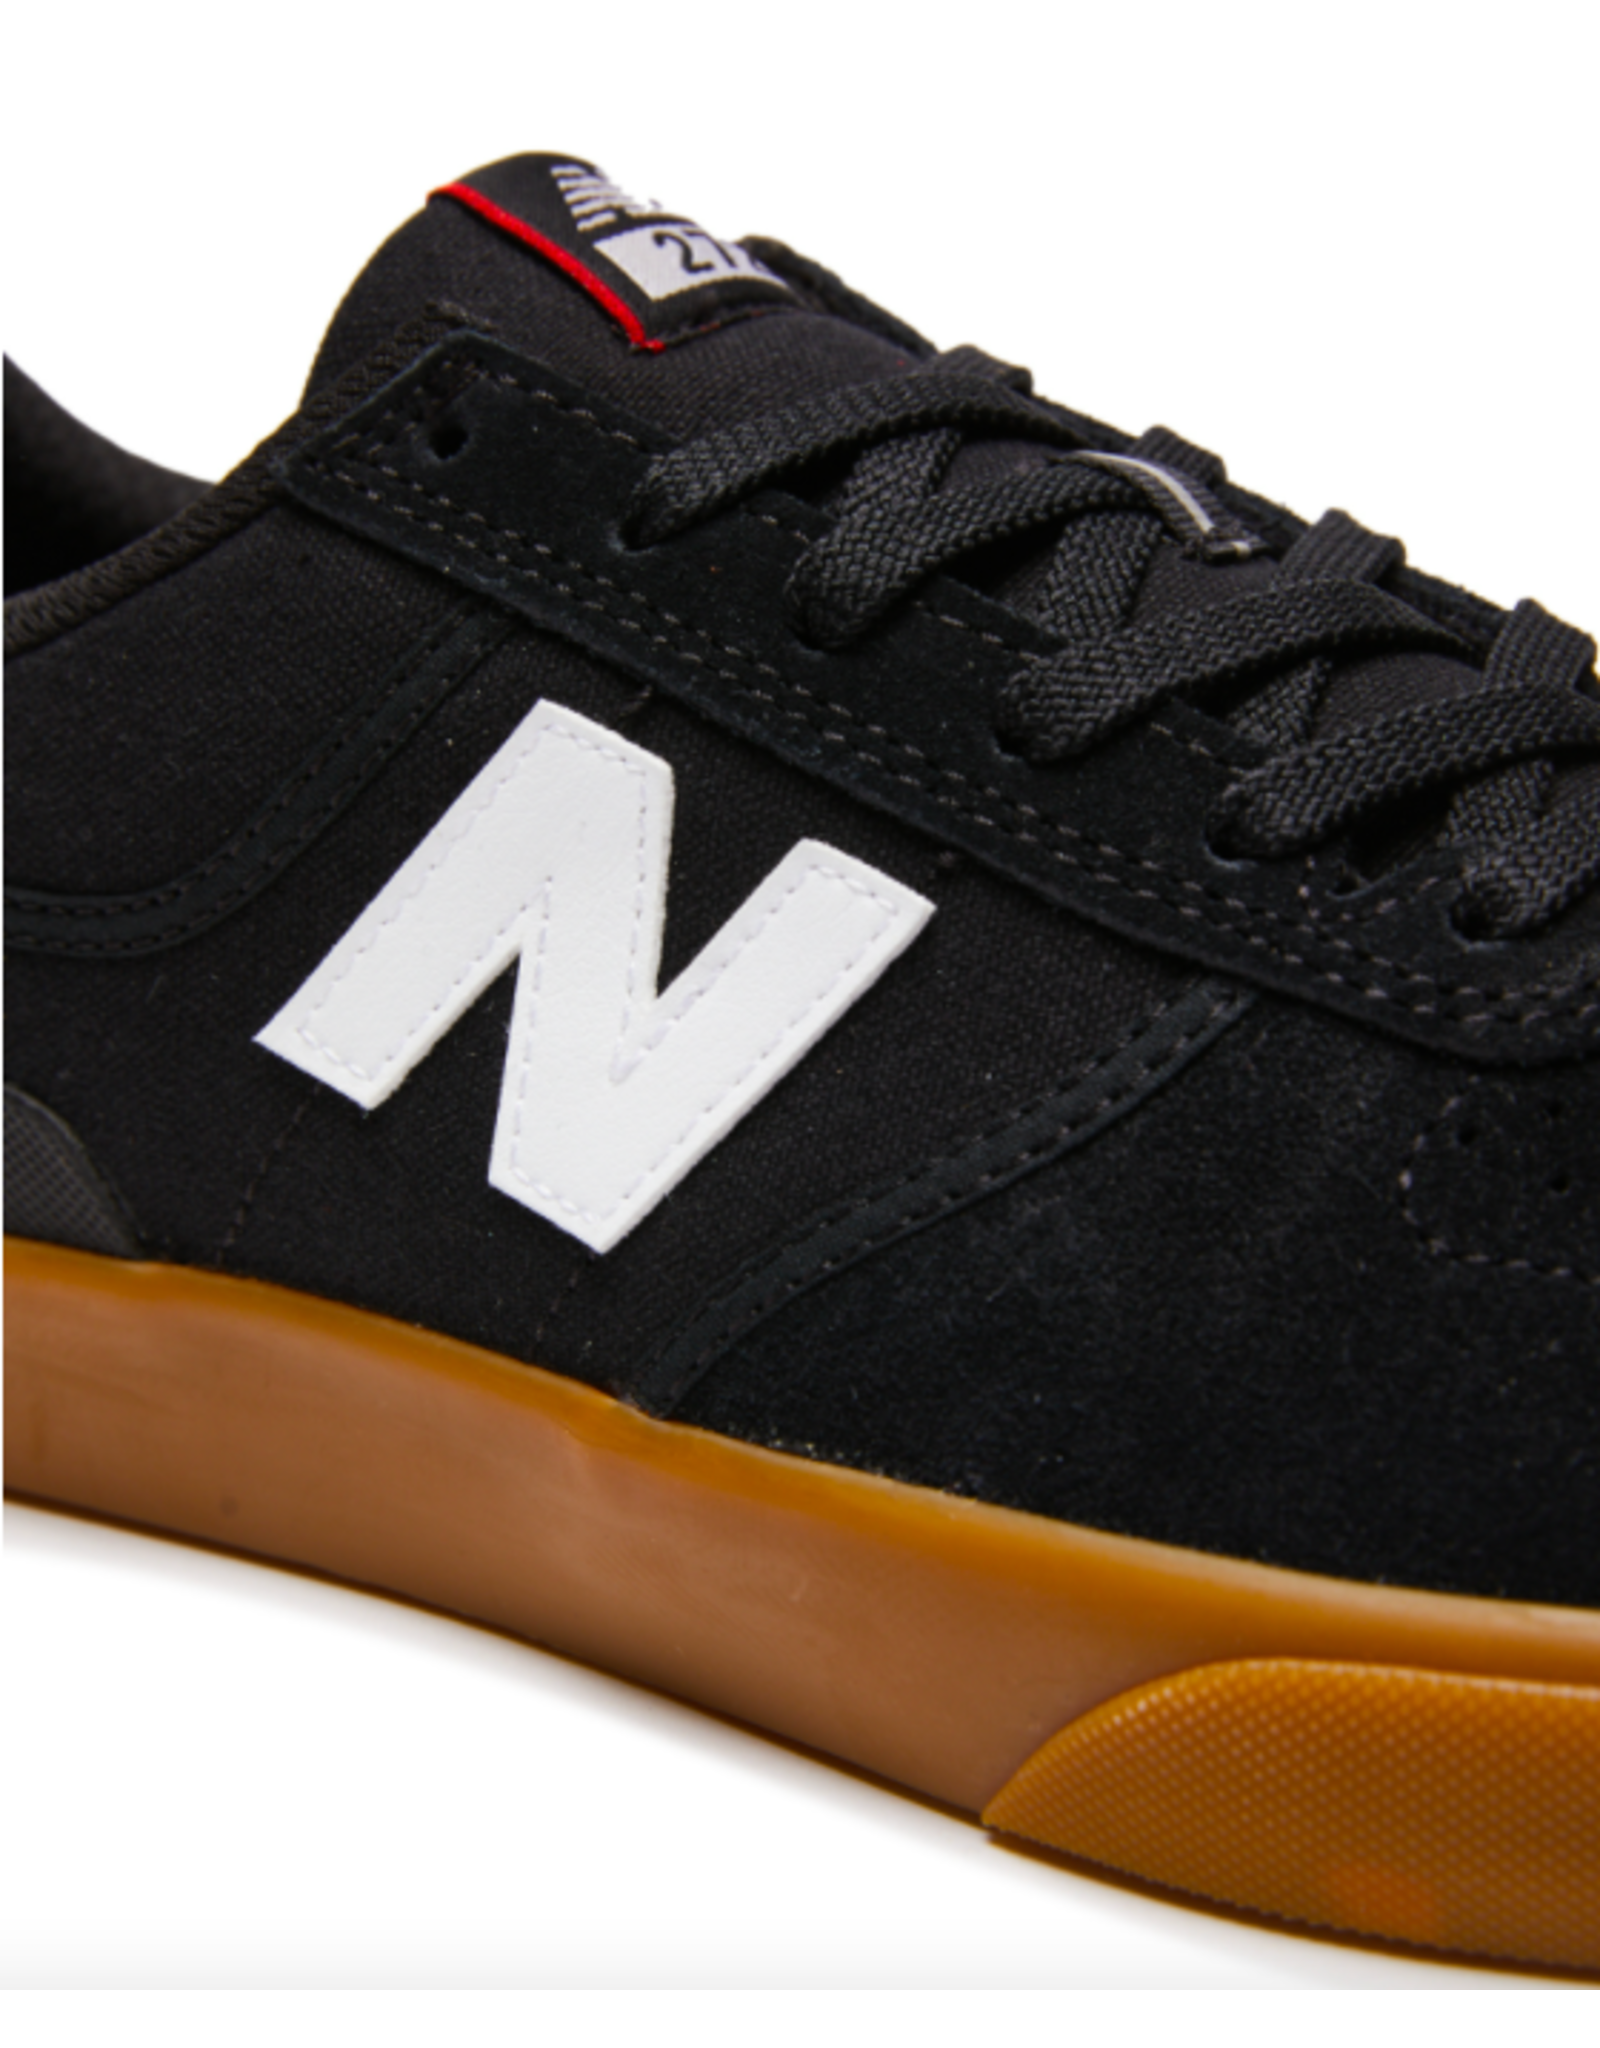 New Balance Men's Numeric 272 Shoes Black/Gum